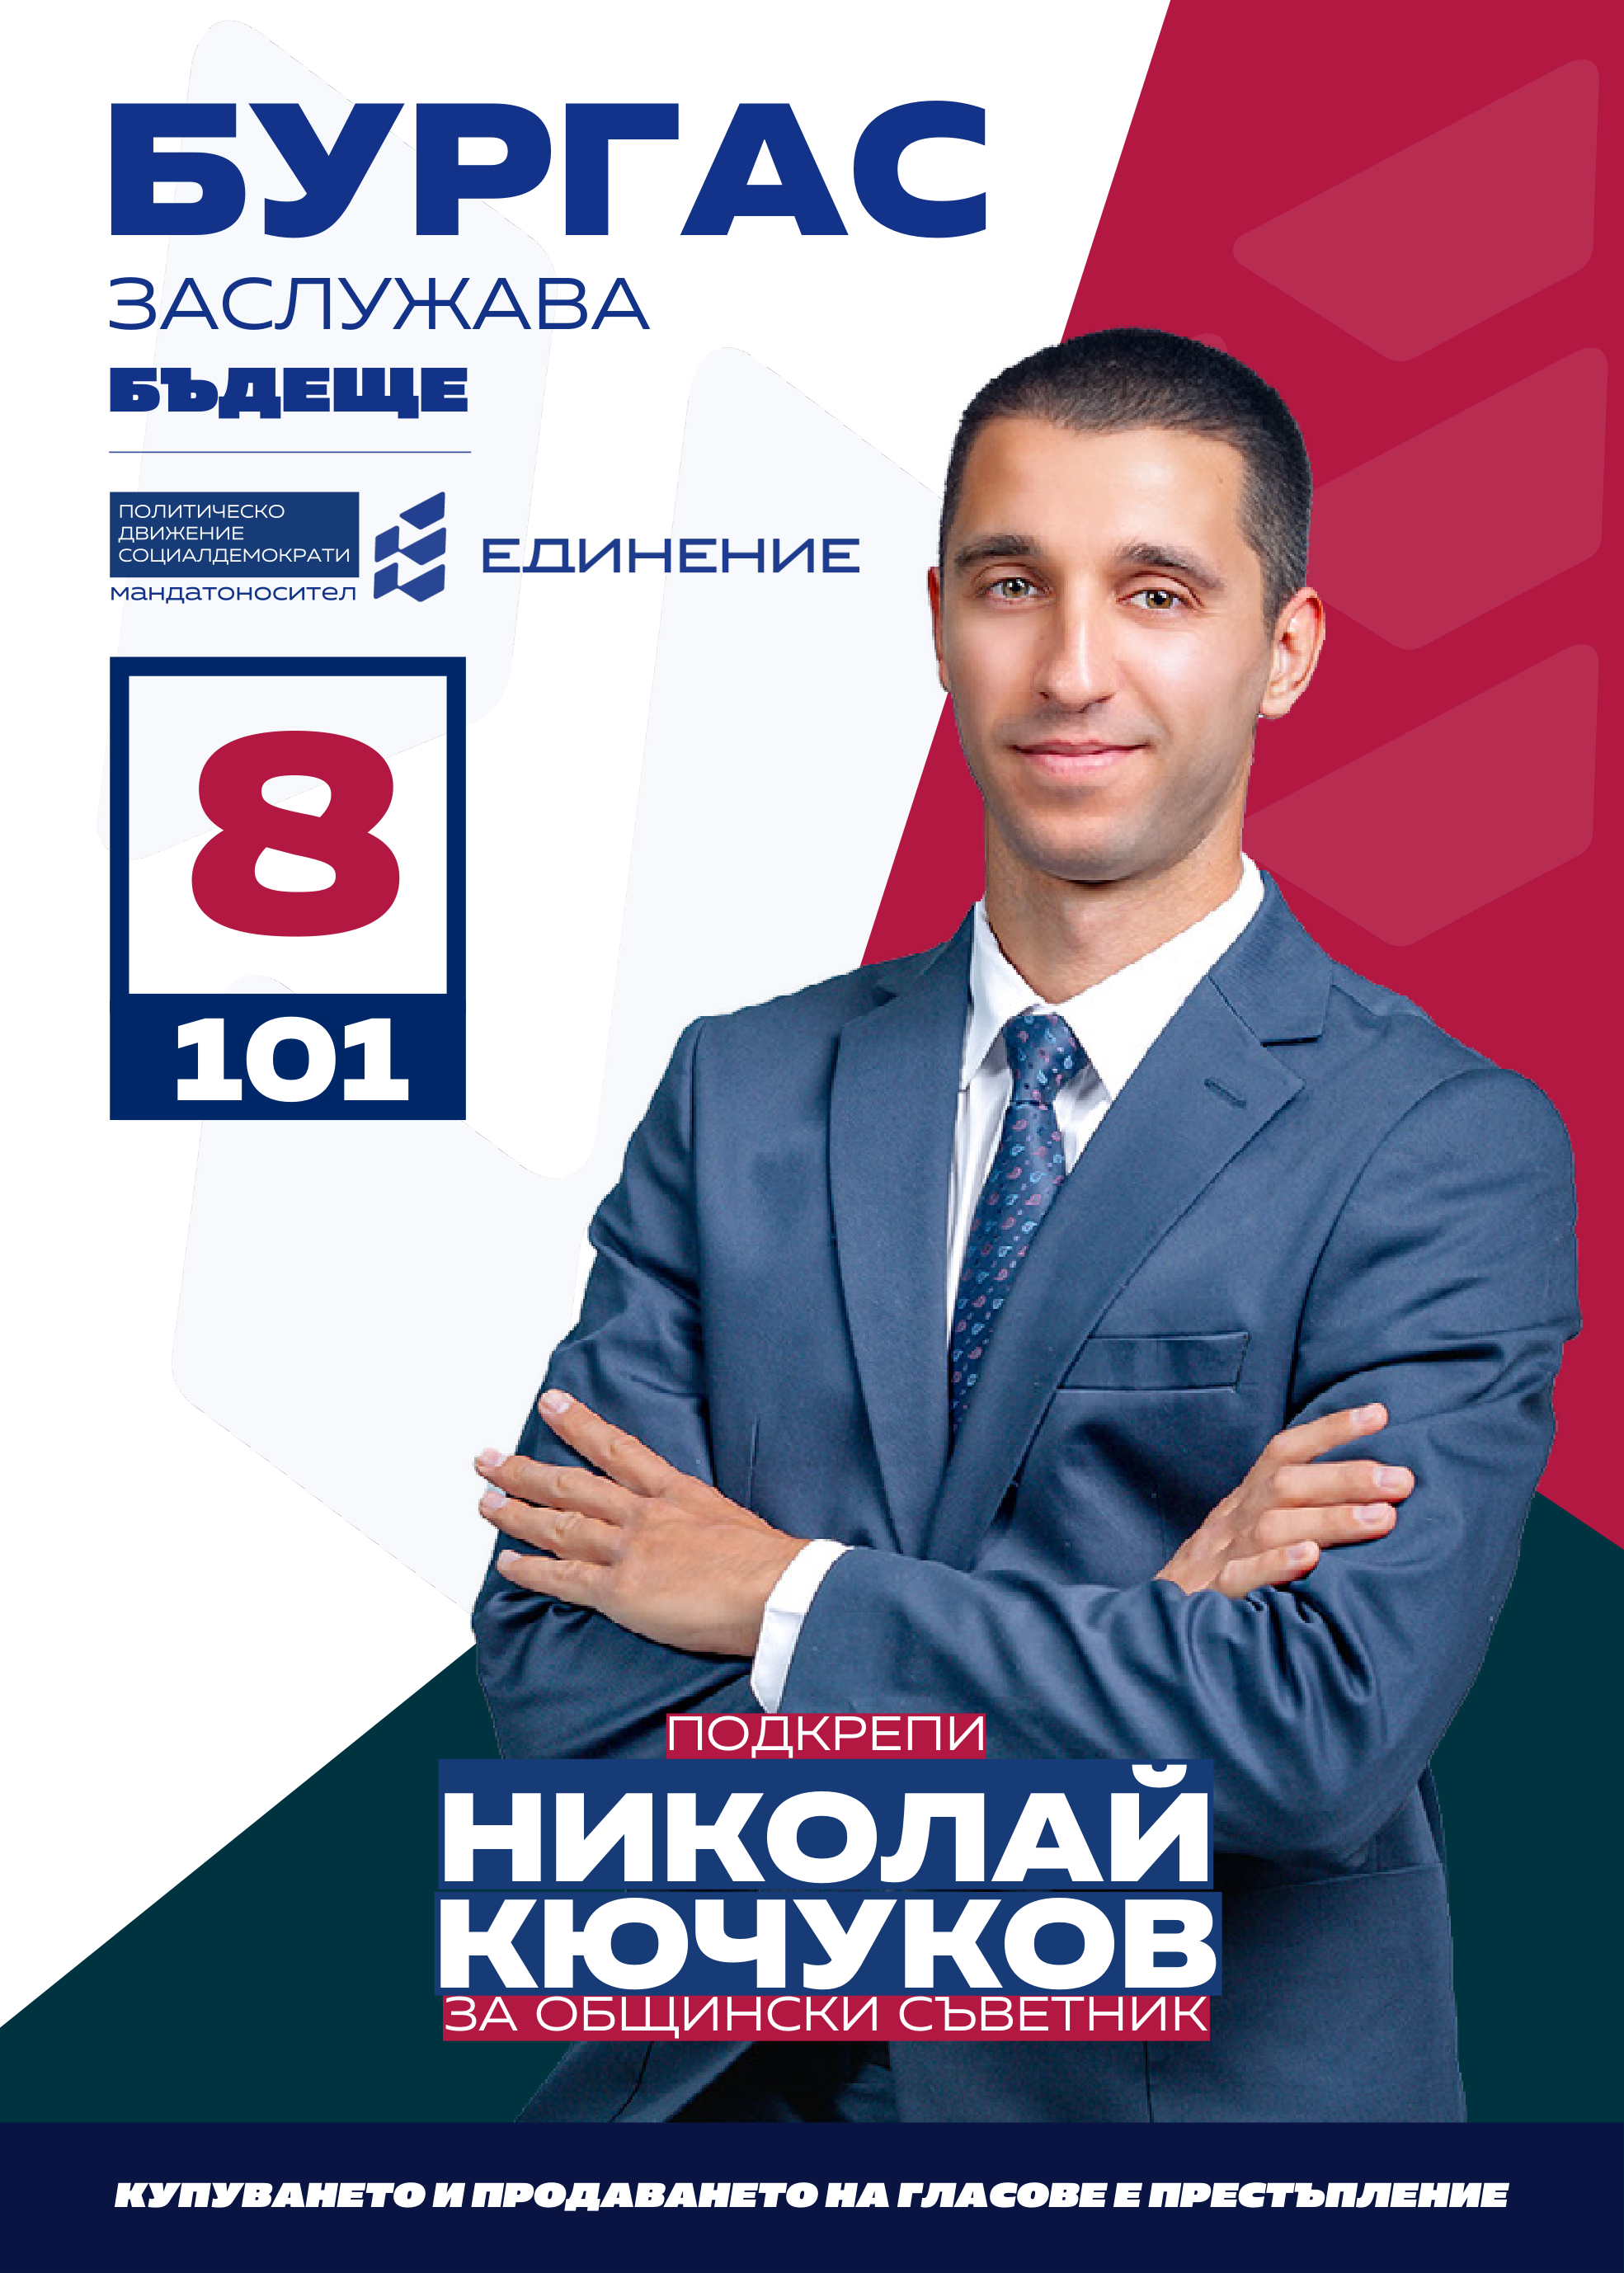 Николай Кючуков – ВиК инженер, треньор
Николай Кючуков е на 31